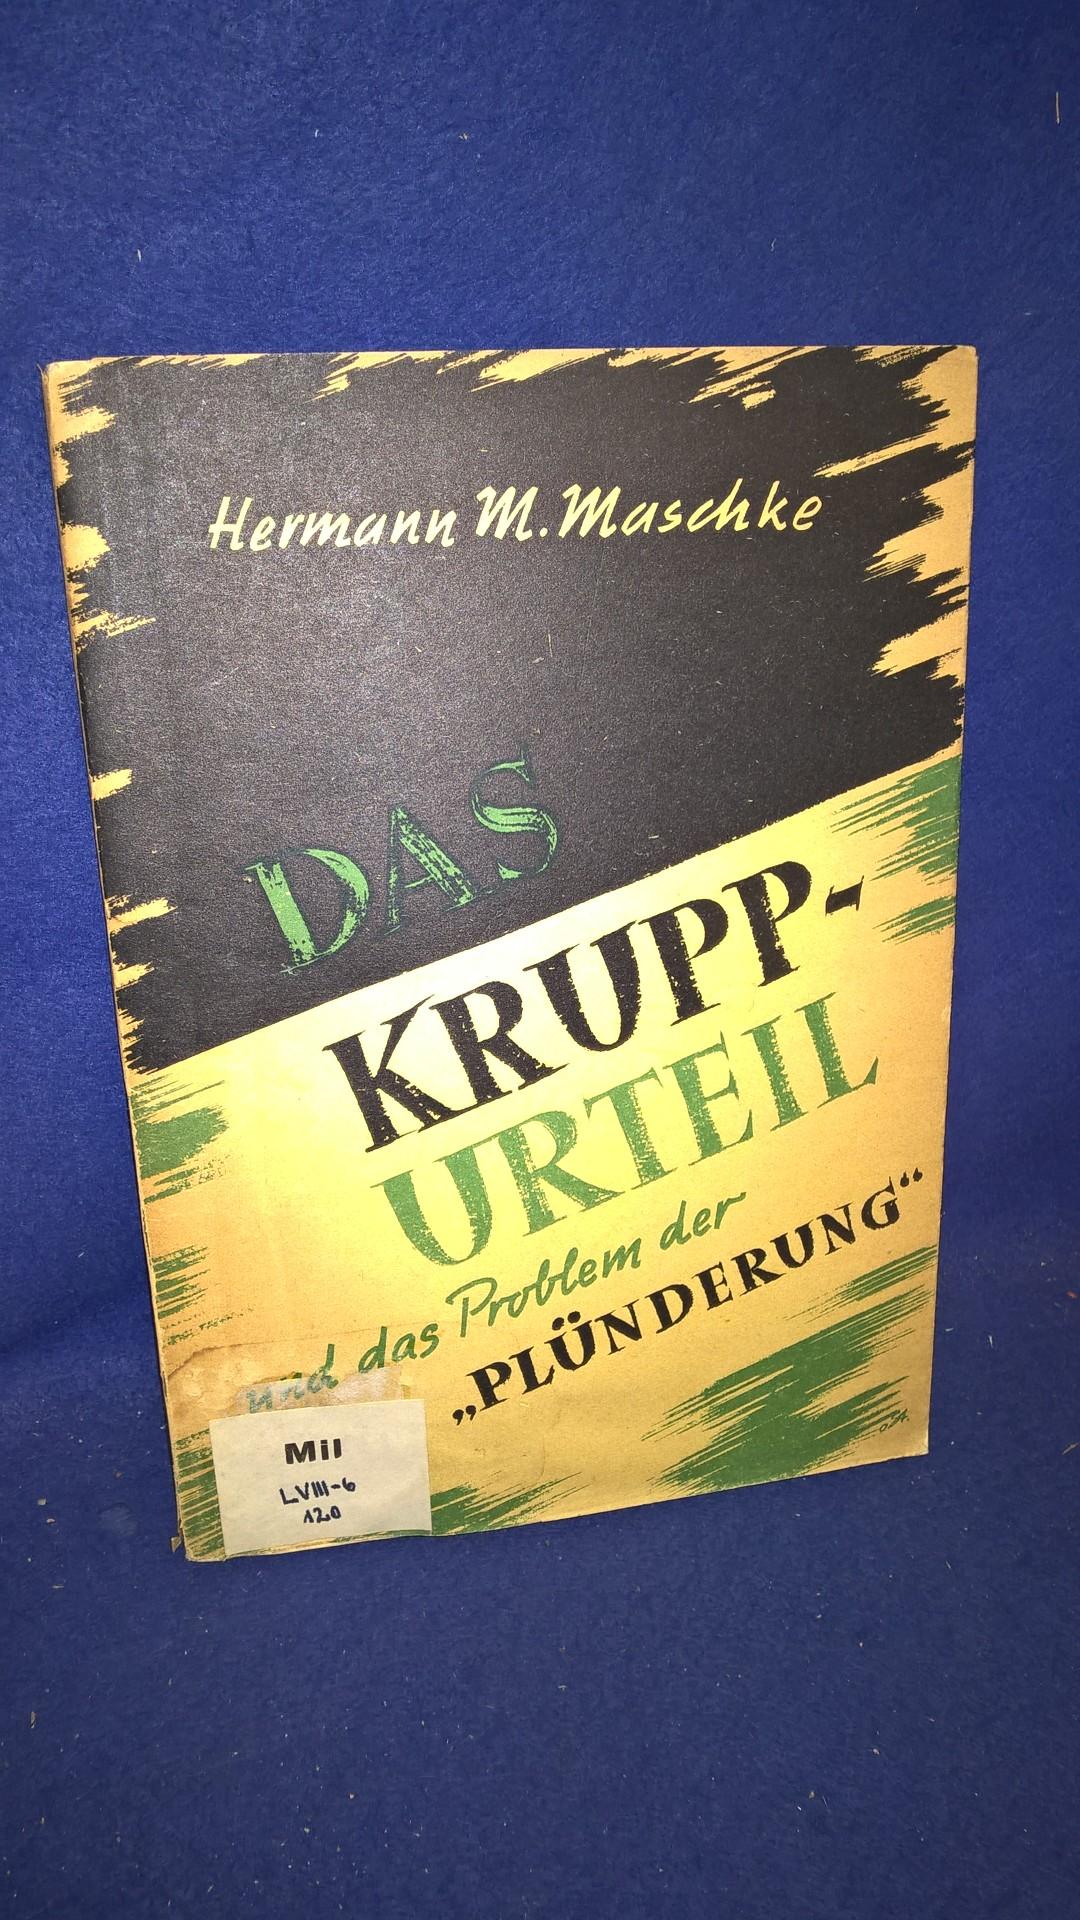 Das Krupp-Urteil und das Problem der "Plünderung".